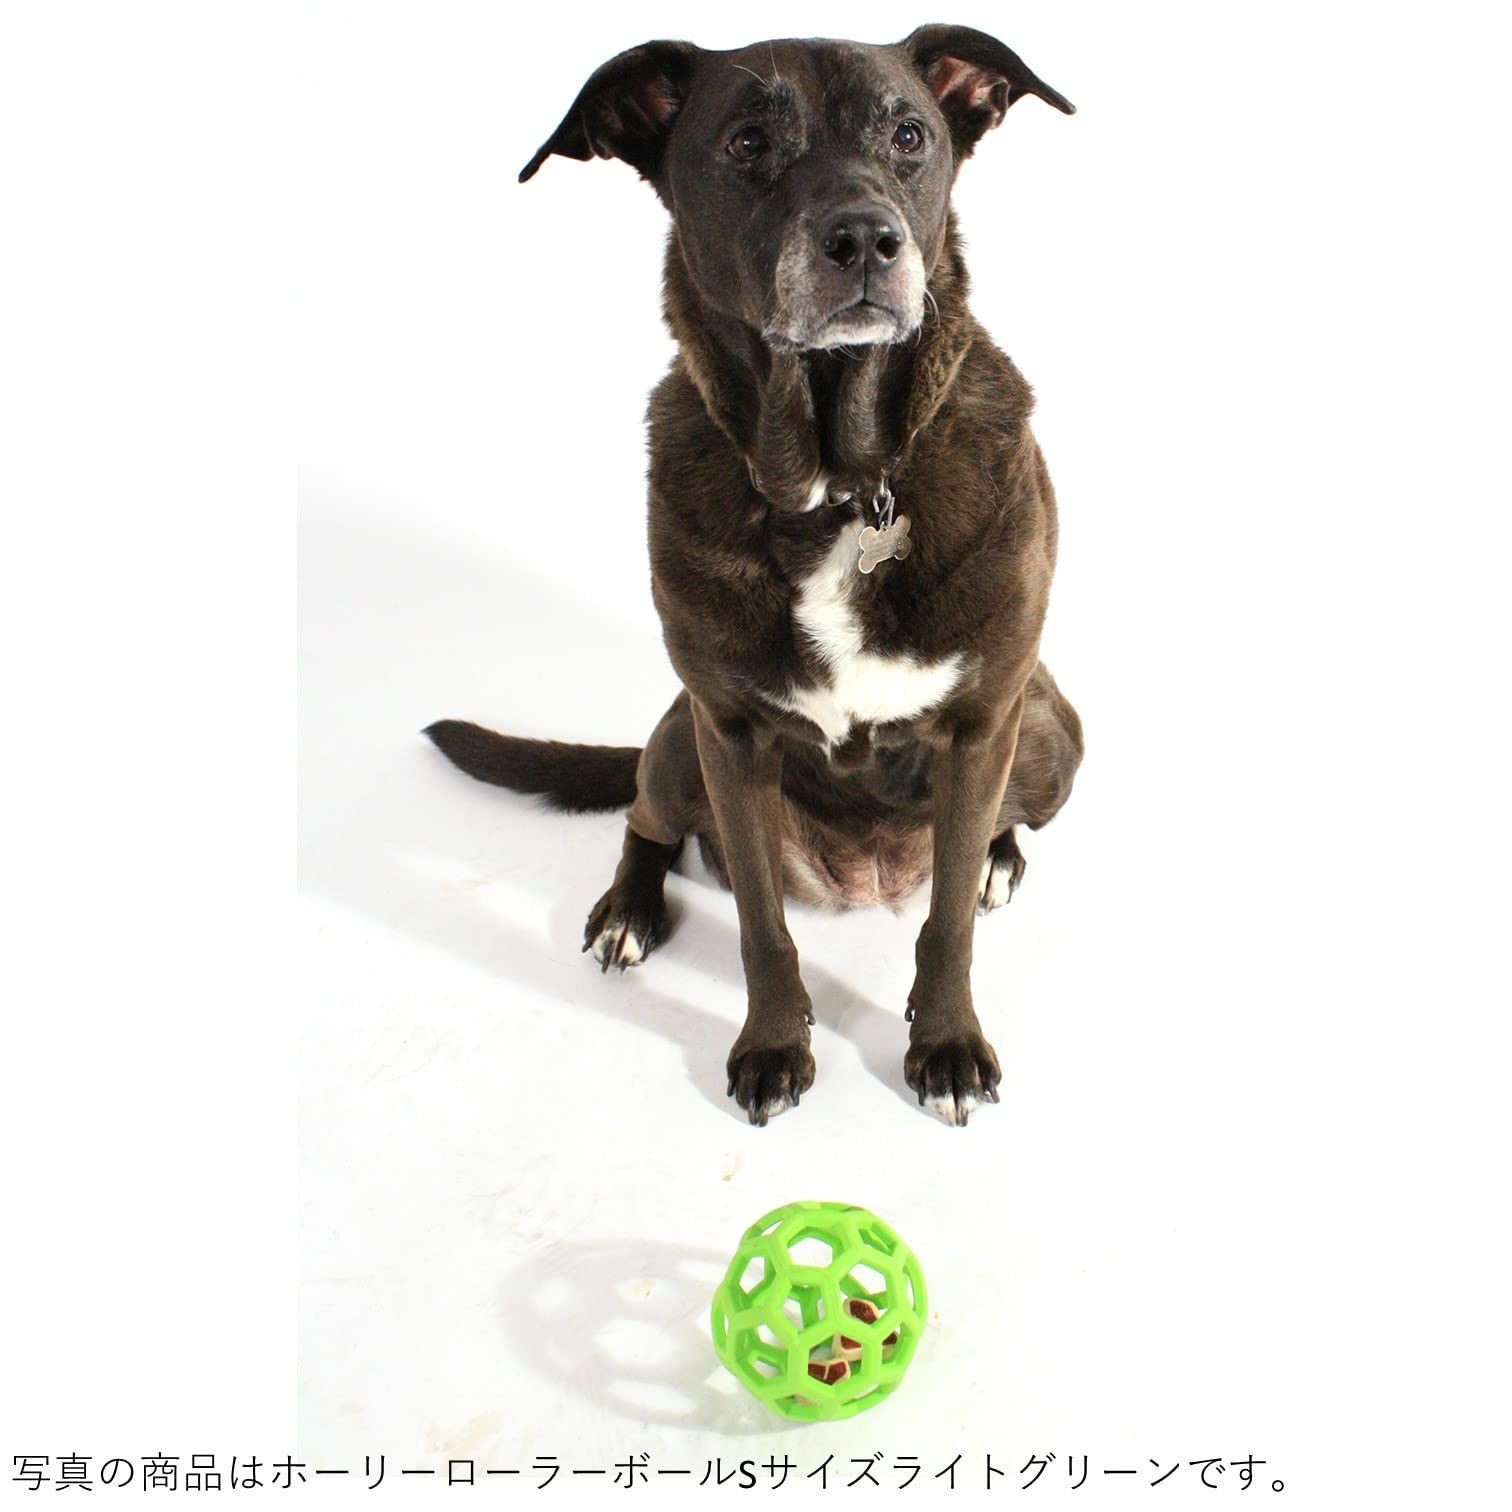 【色: ライトブルー】JW PetJWペット 犬用おもちゃ ホーリーローラーボー